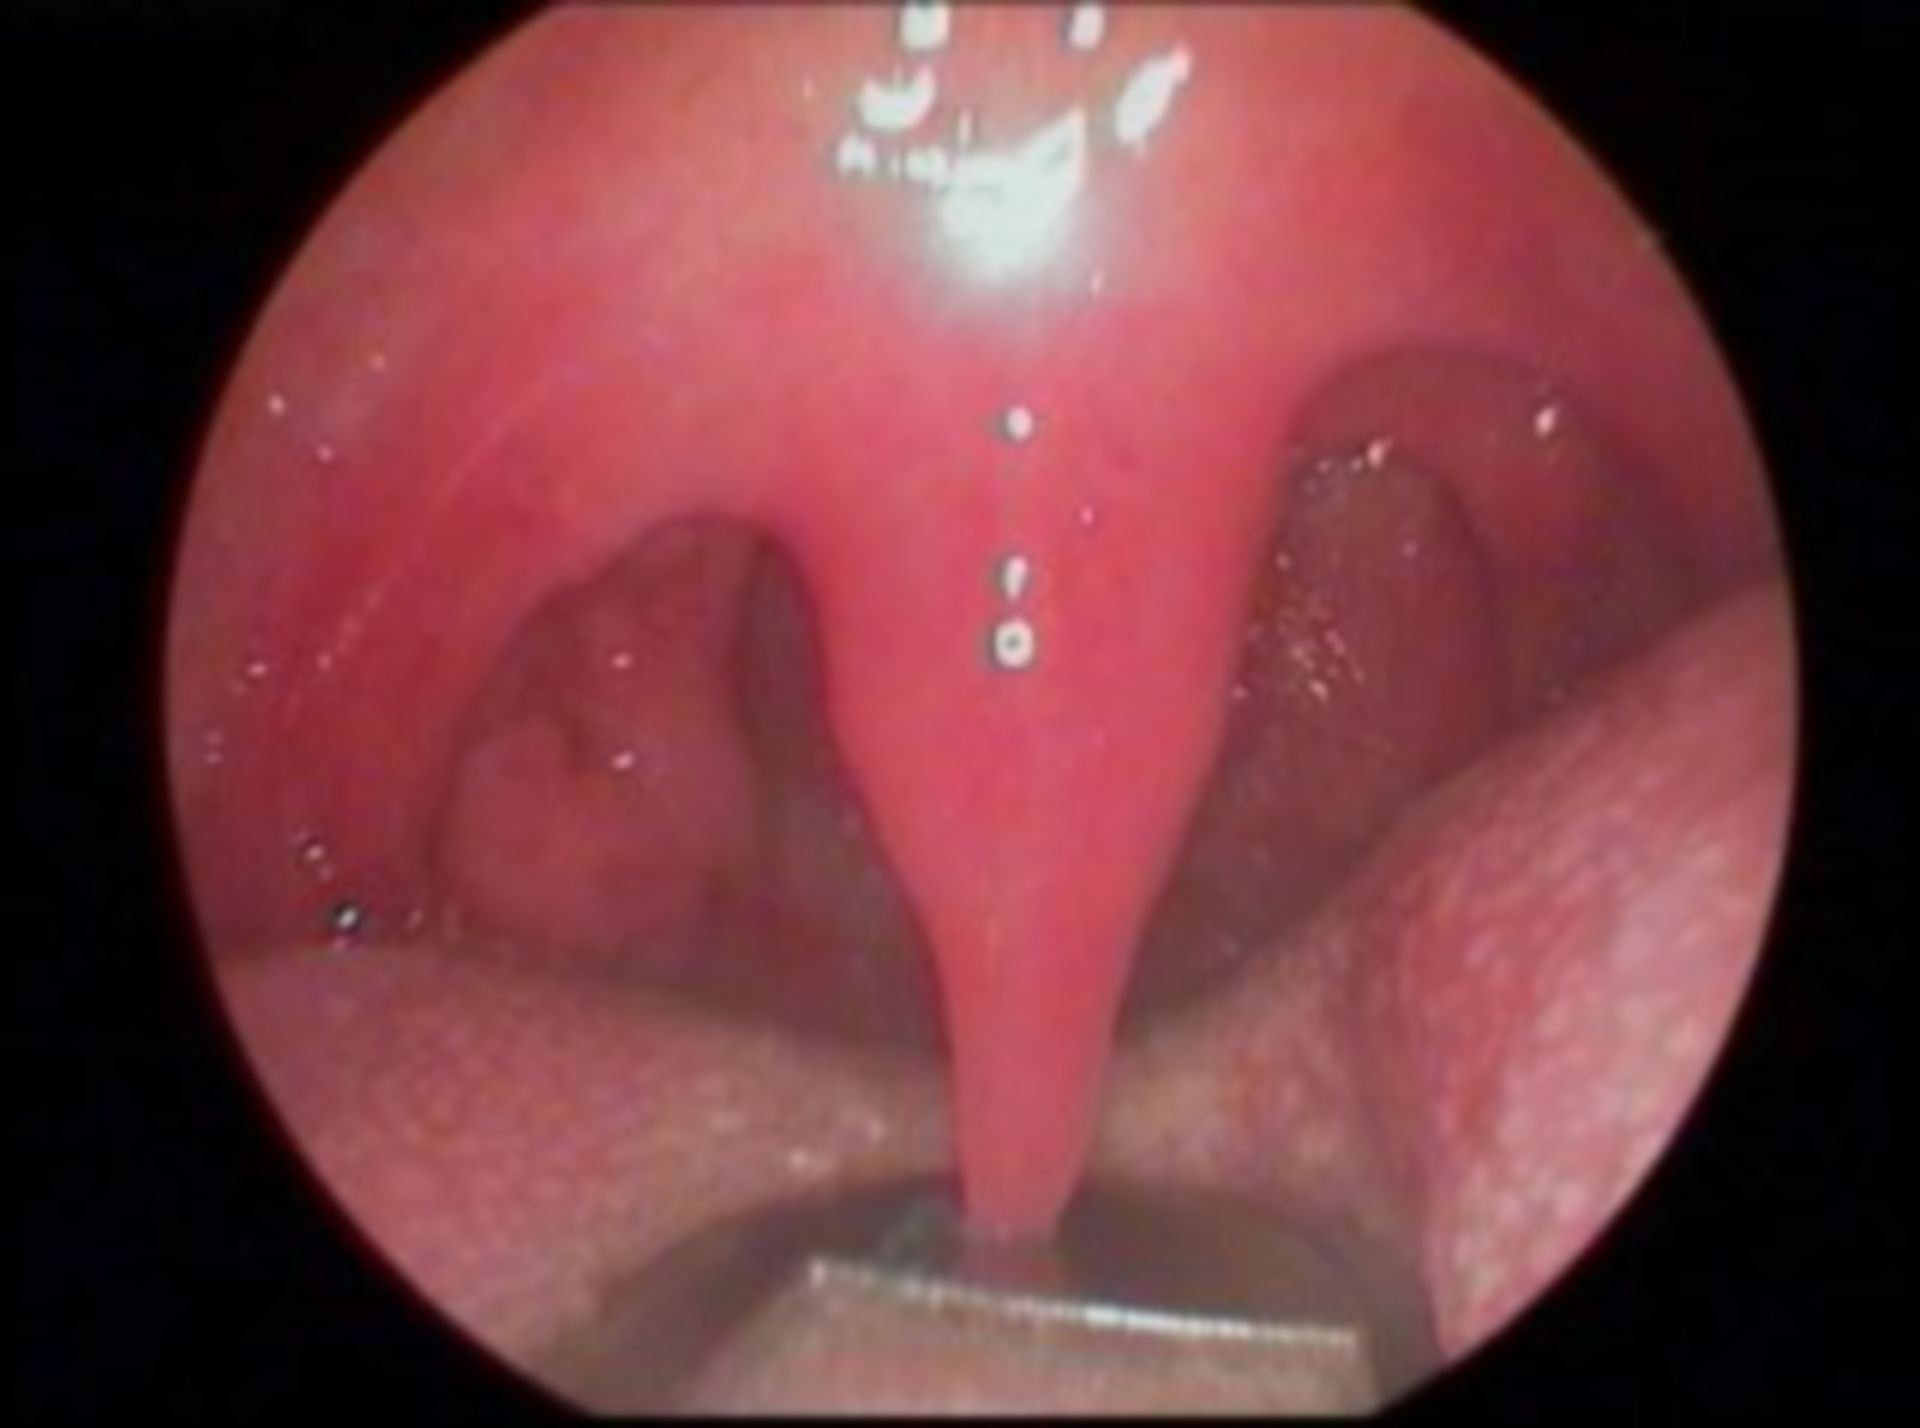 Long uvula